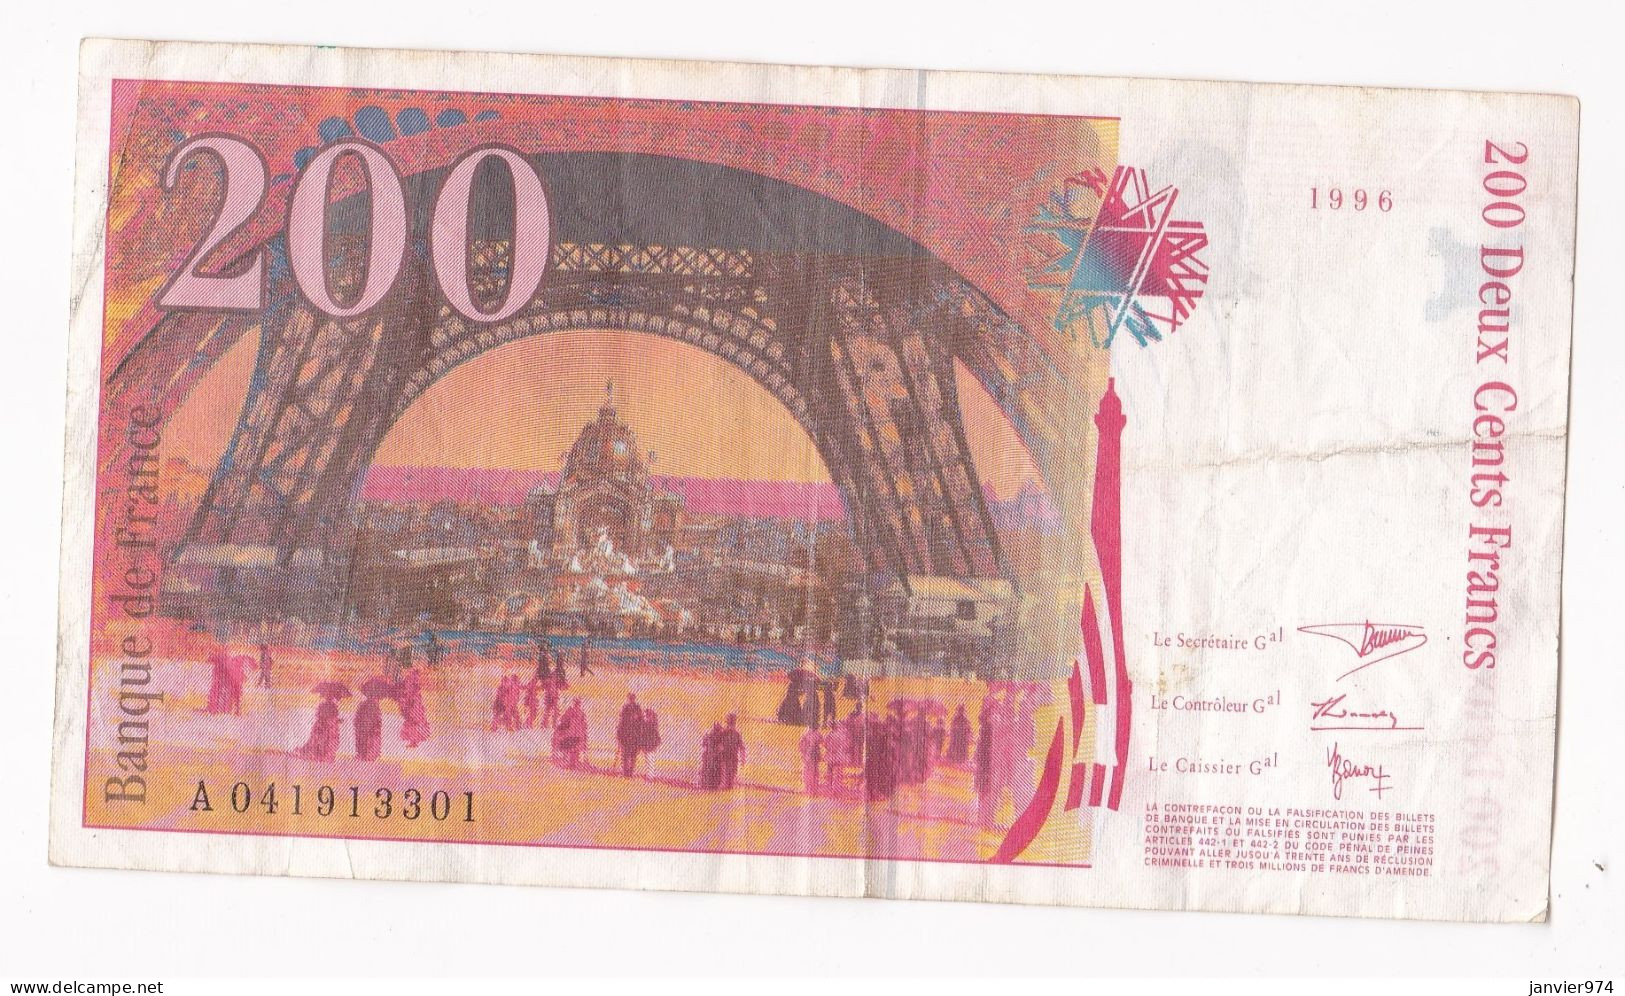 200 Francs Eiffel 1996, Alphabet : A 041913301, Tres Beau Billet - 200 F 1995-1999 ''Eiffel''